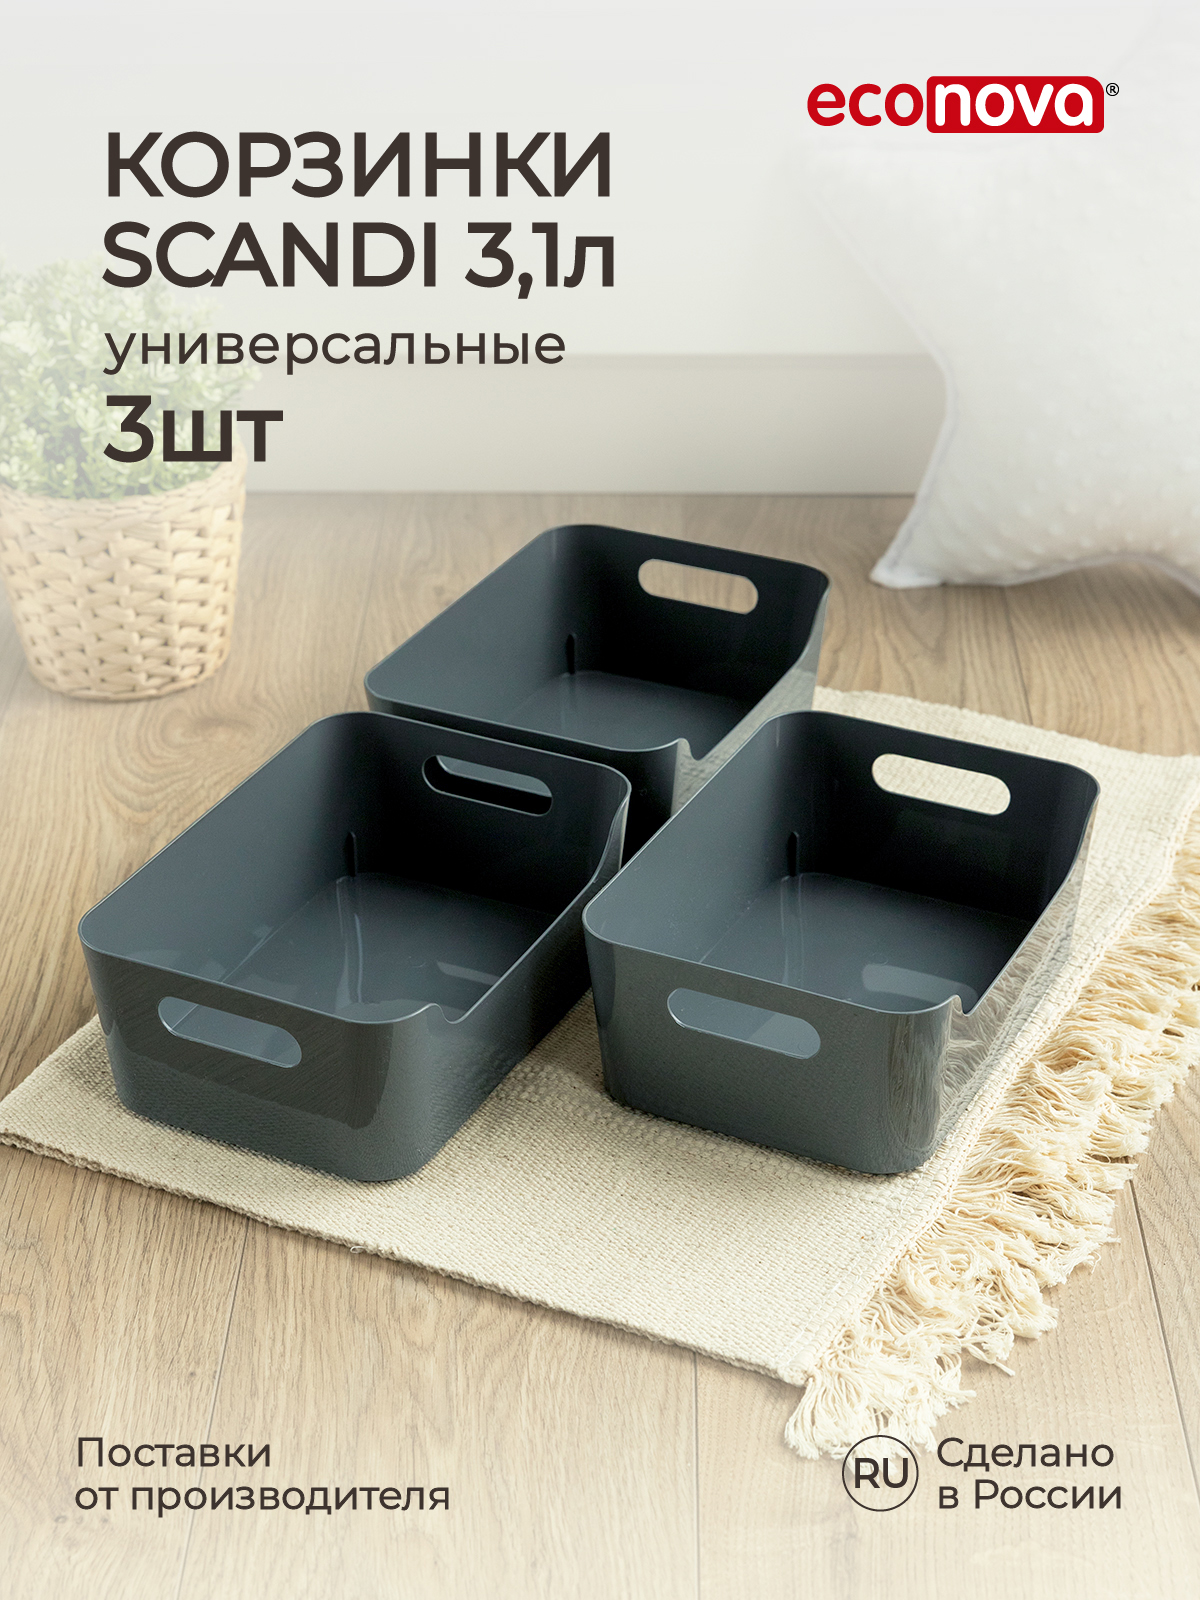 Комплект корзинок Econova универсальных Scandi 240x170x90 мм 3.1л 3шт серый - фото 1